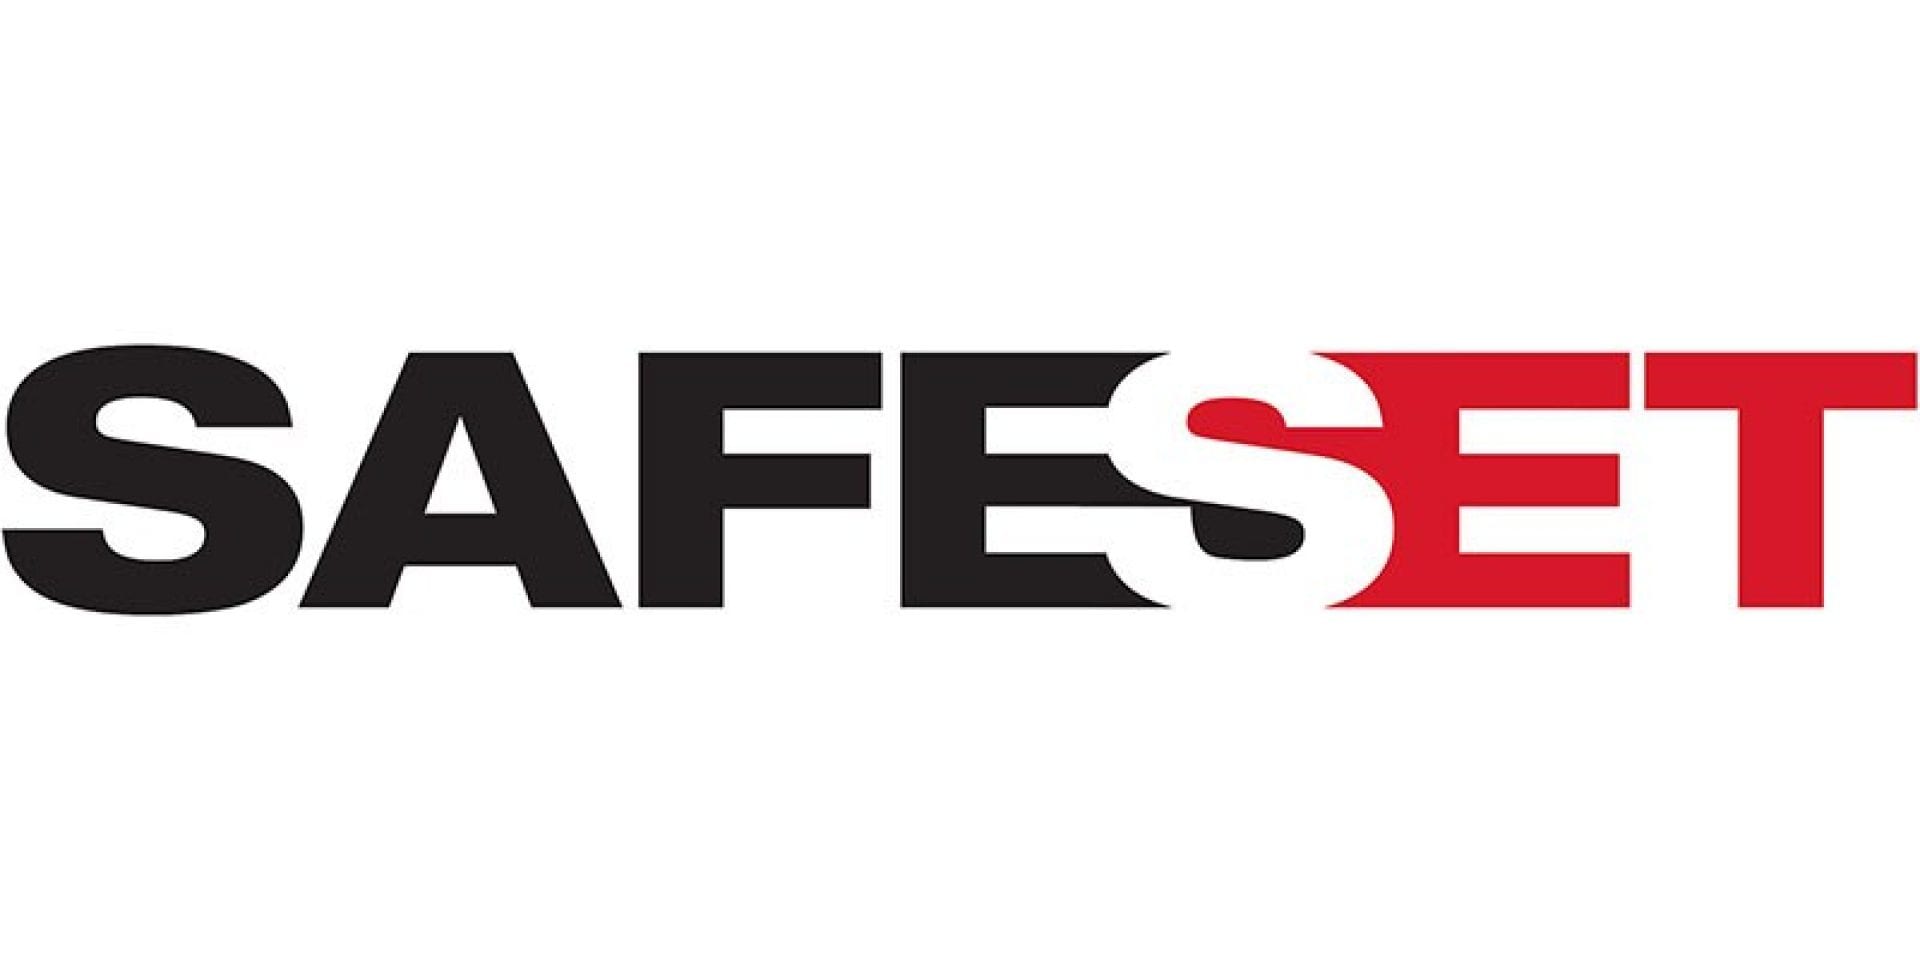 あと施工アンカーの打設とあと施工鉄筋定着施工のための、施工信頼性を向上する、SafeSet工法